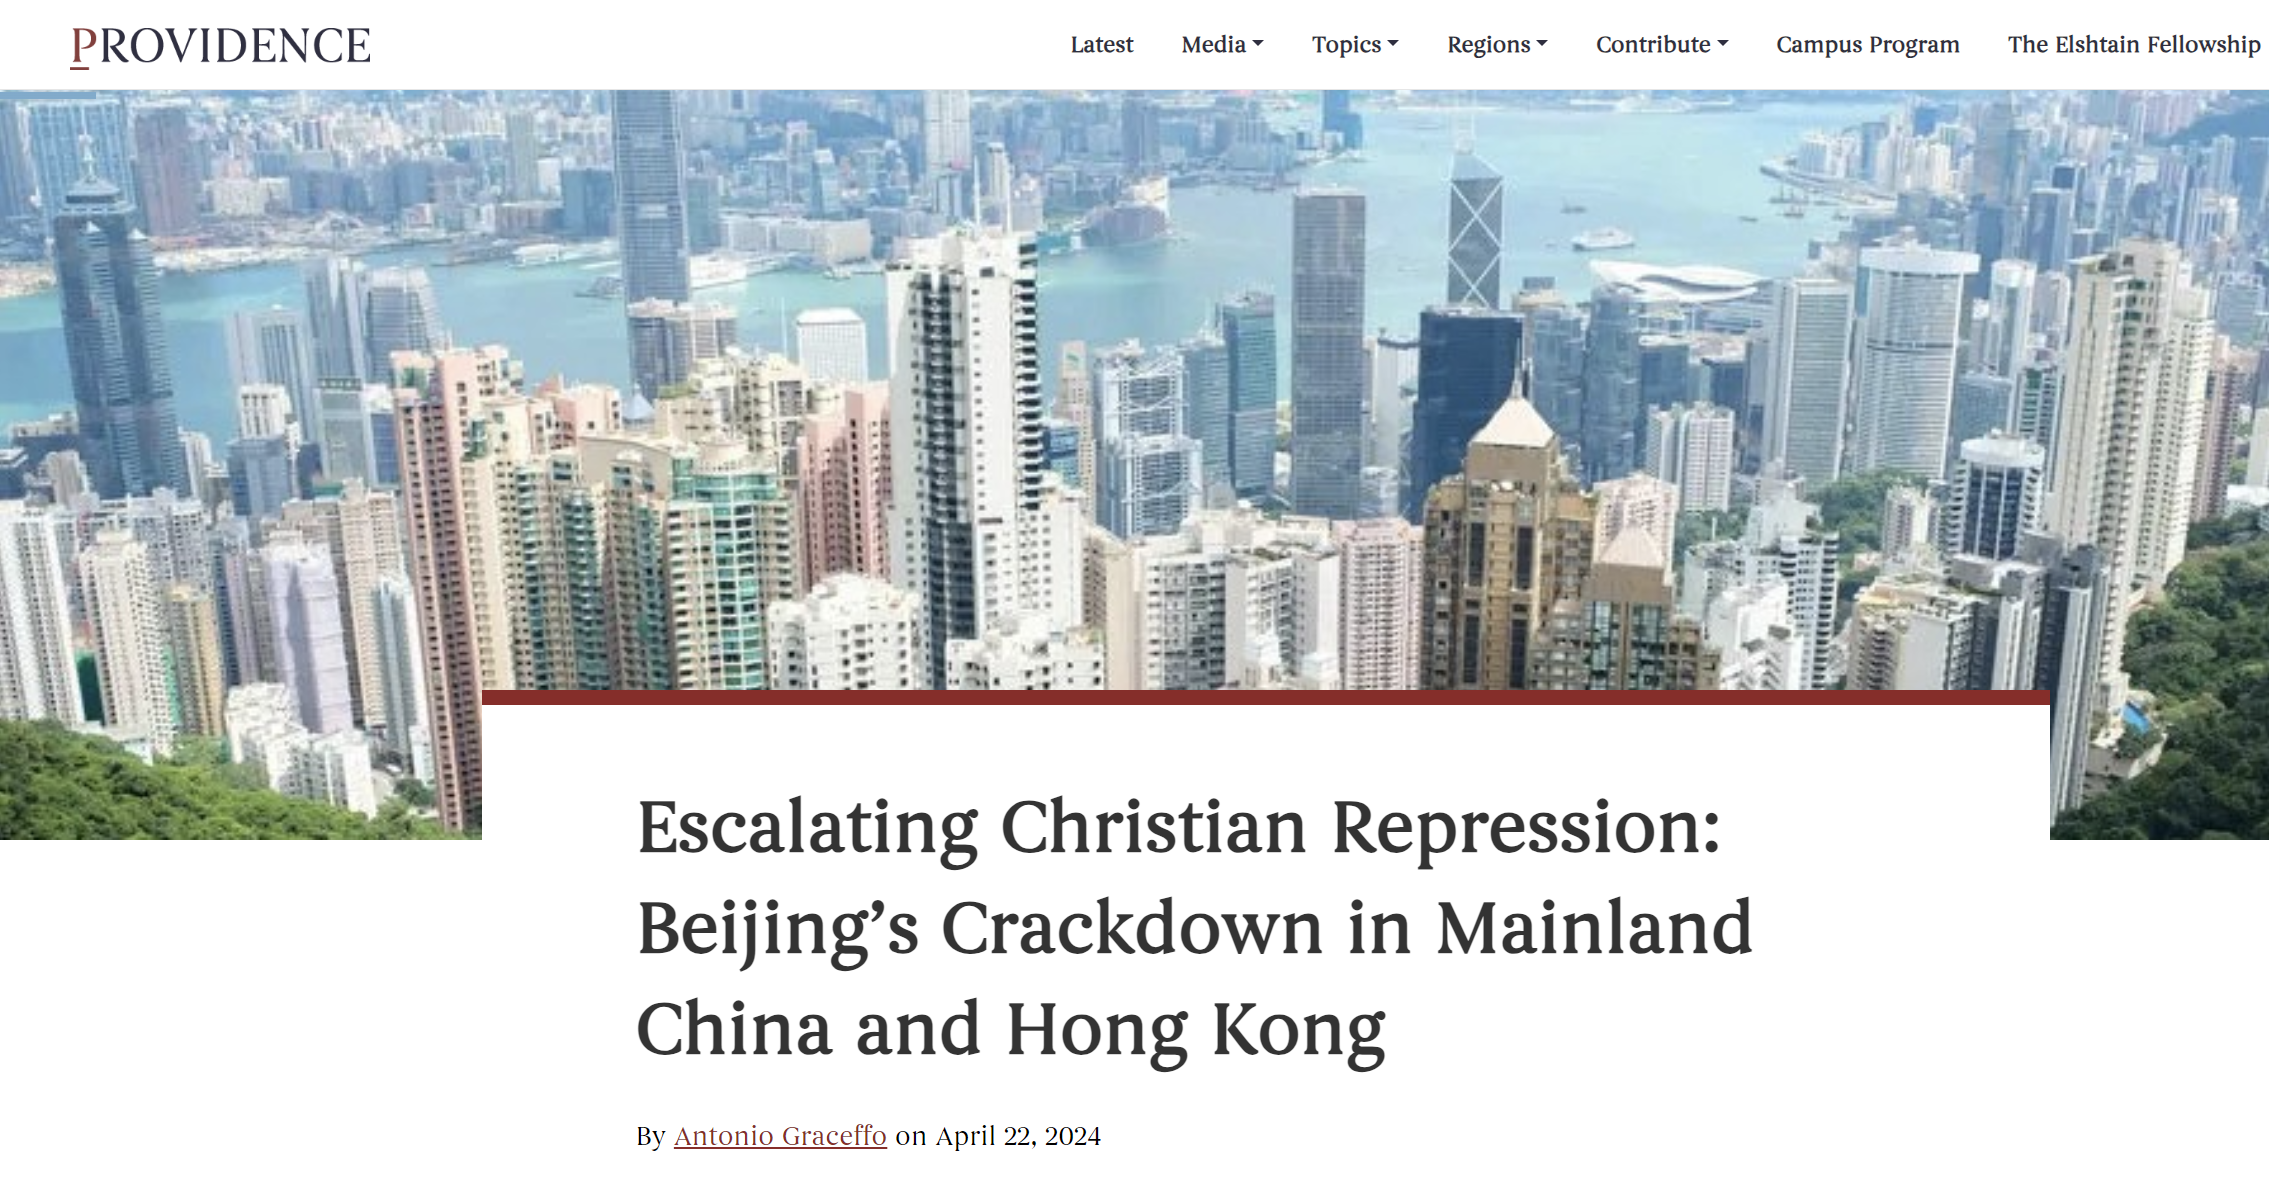 Providence: Επιδεινώνονται οι συνθήκες για τους Χριστιανούς στην Κίνα